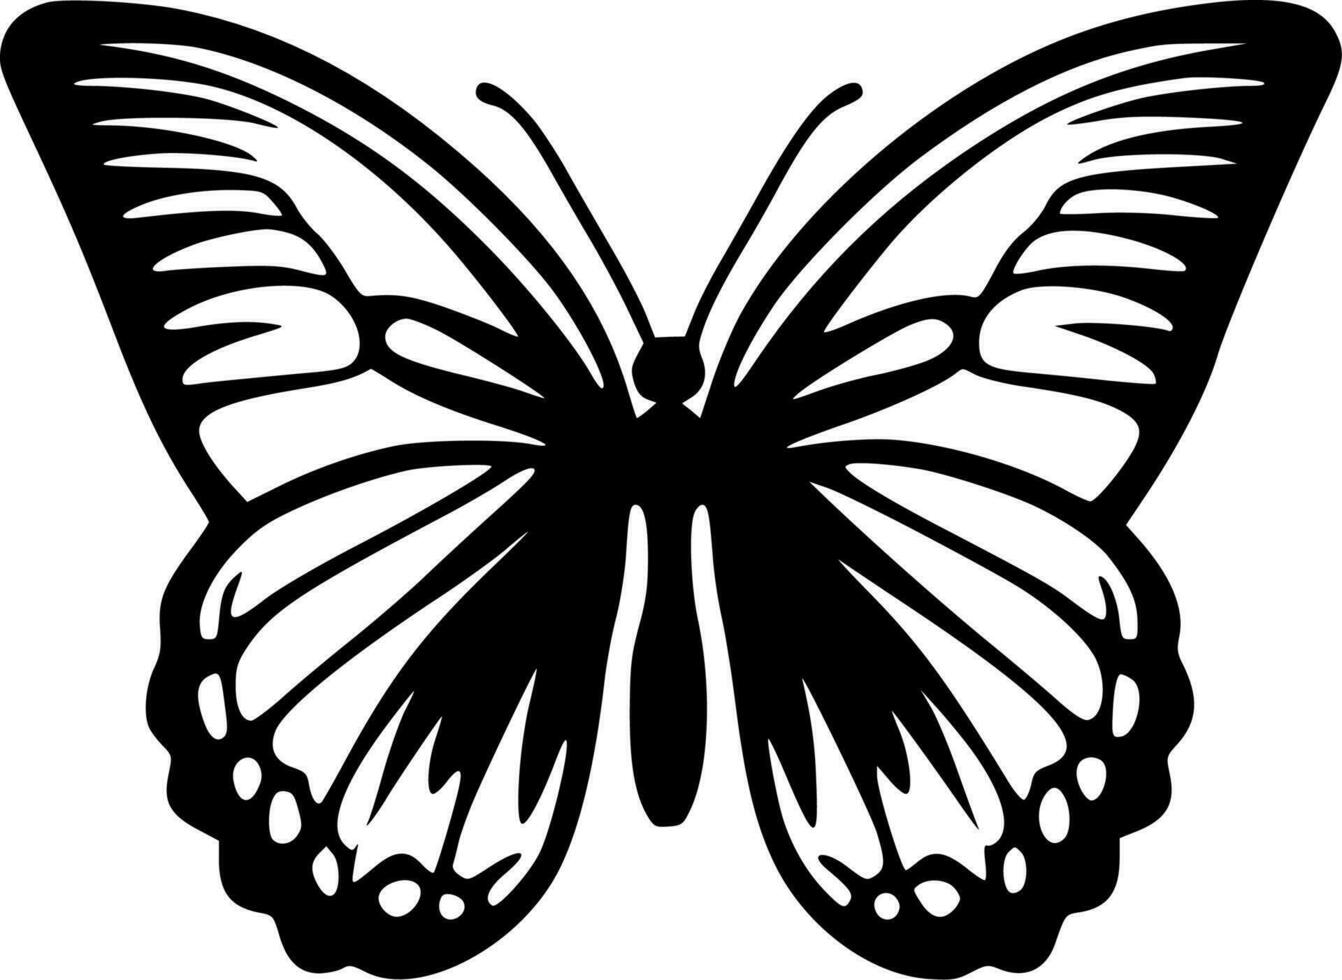 borboleta - Preto e branco isolado ícone - vetor ilustração